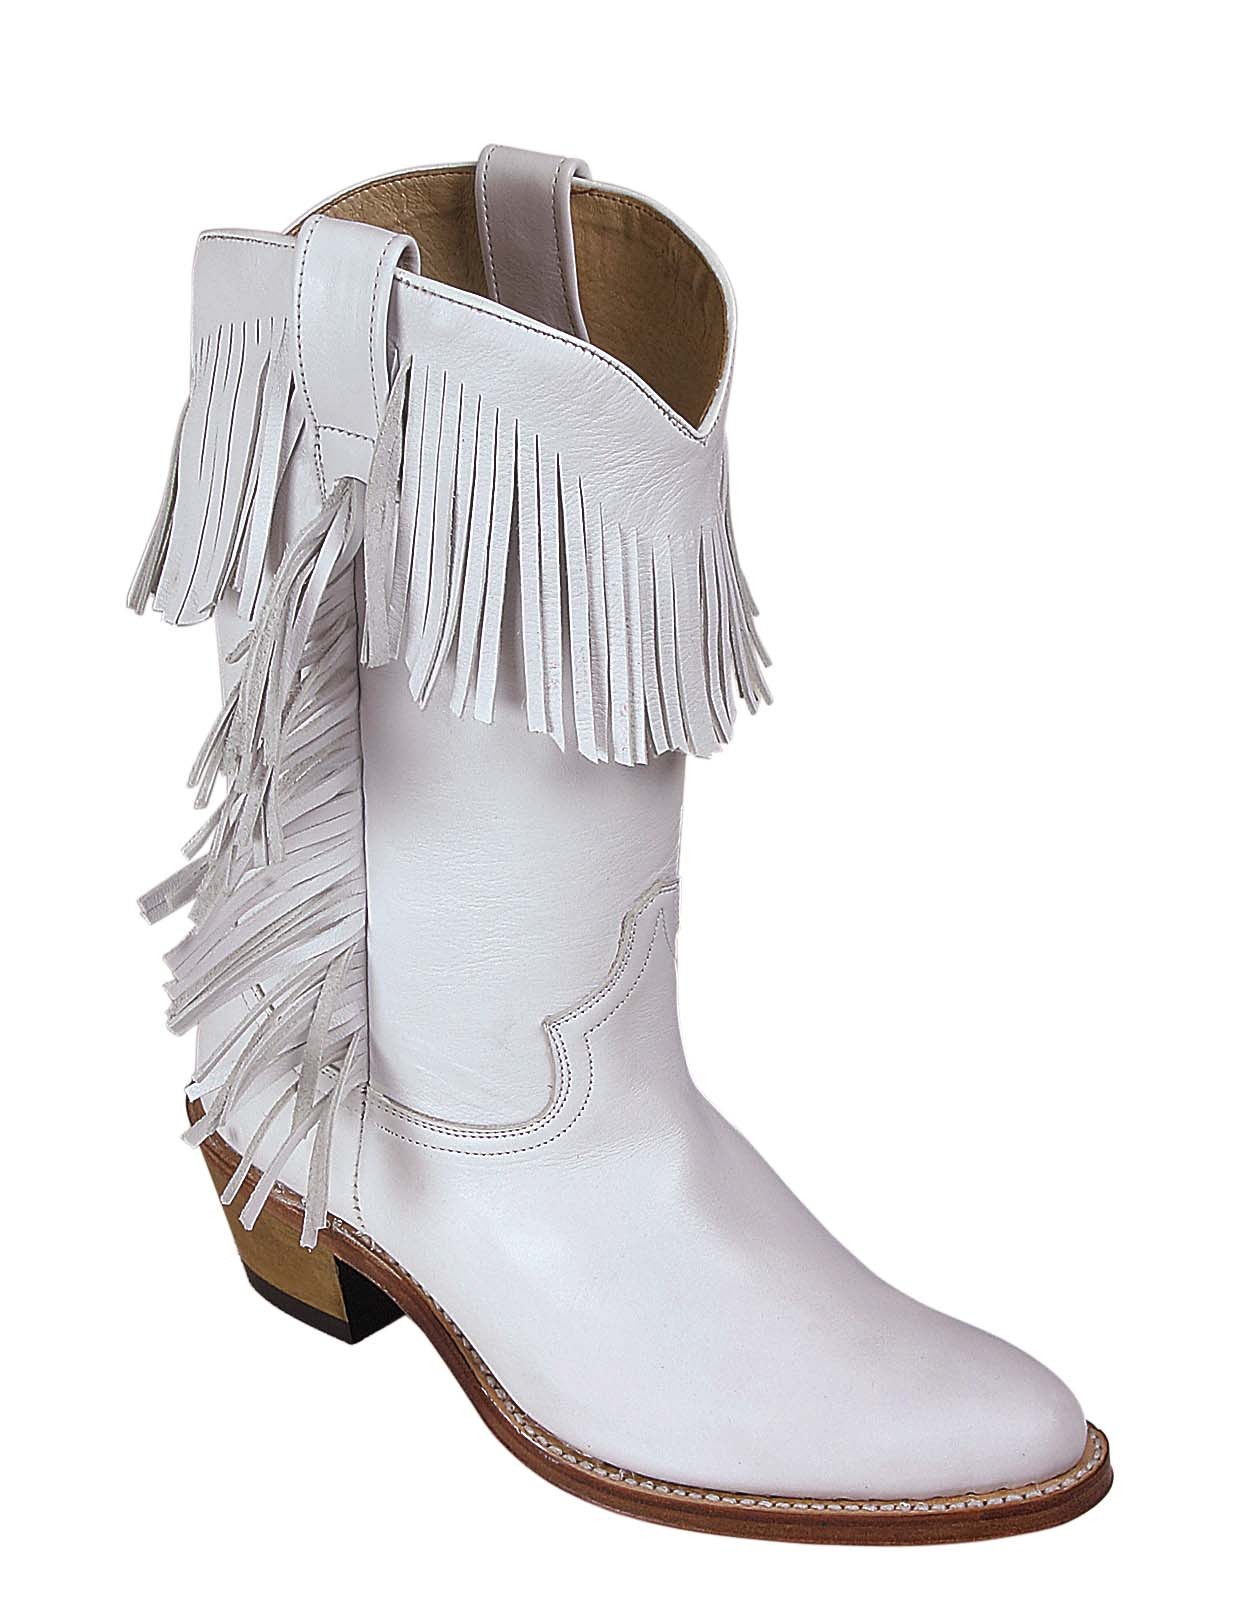 white cowboy boots cheap